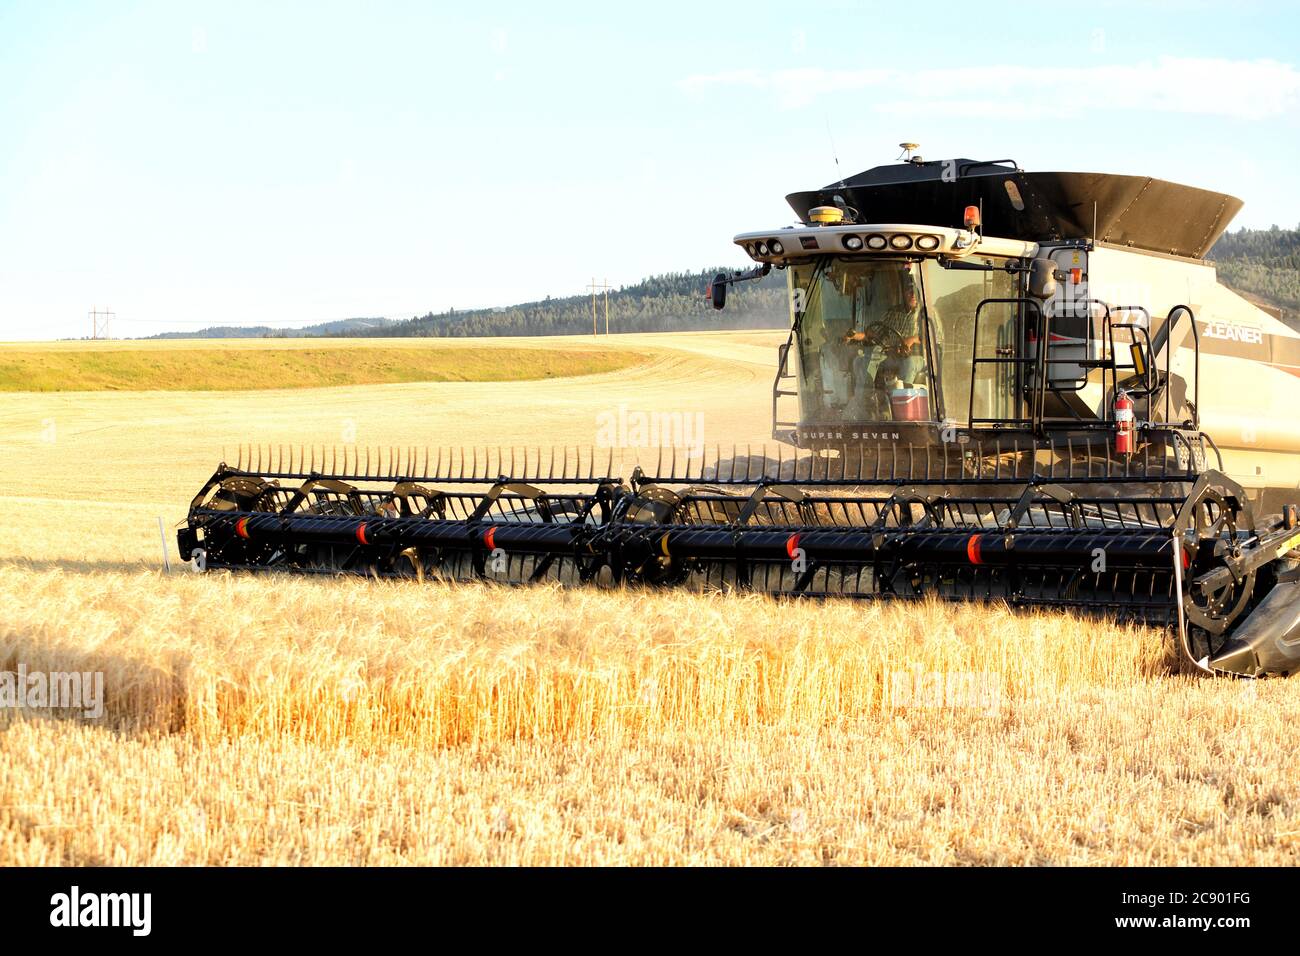 Ririe, Idaho, USA 8 agosto 2016 macchine agricole che raccolgono grano nei fertili campi agricoli dell'Idaho, con la catena montuosa del Teton sullo sfondo. Foto Stock